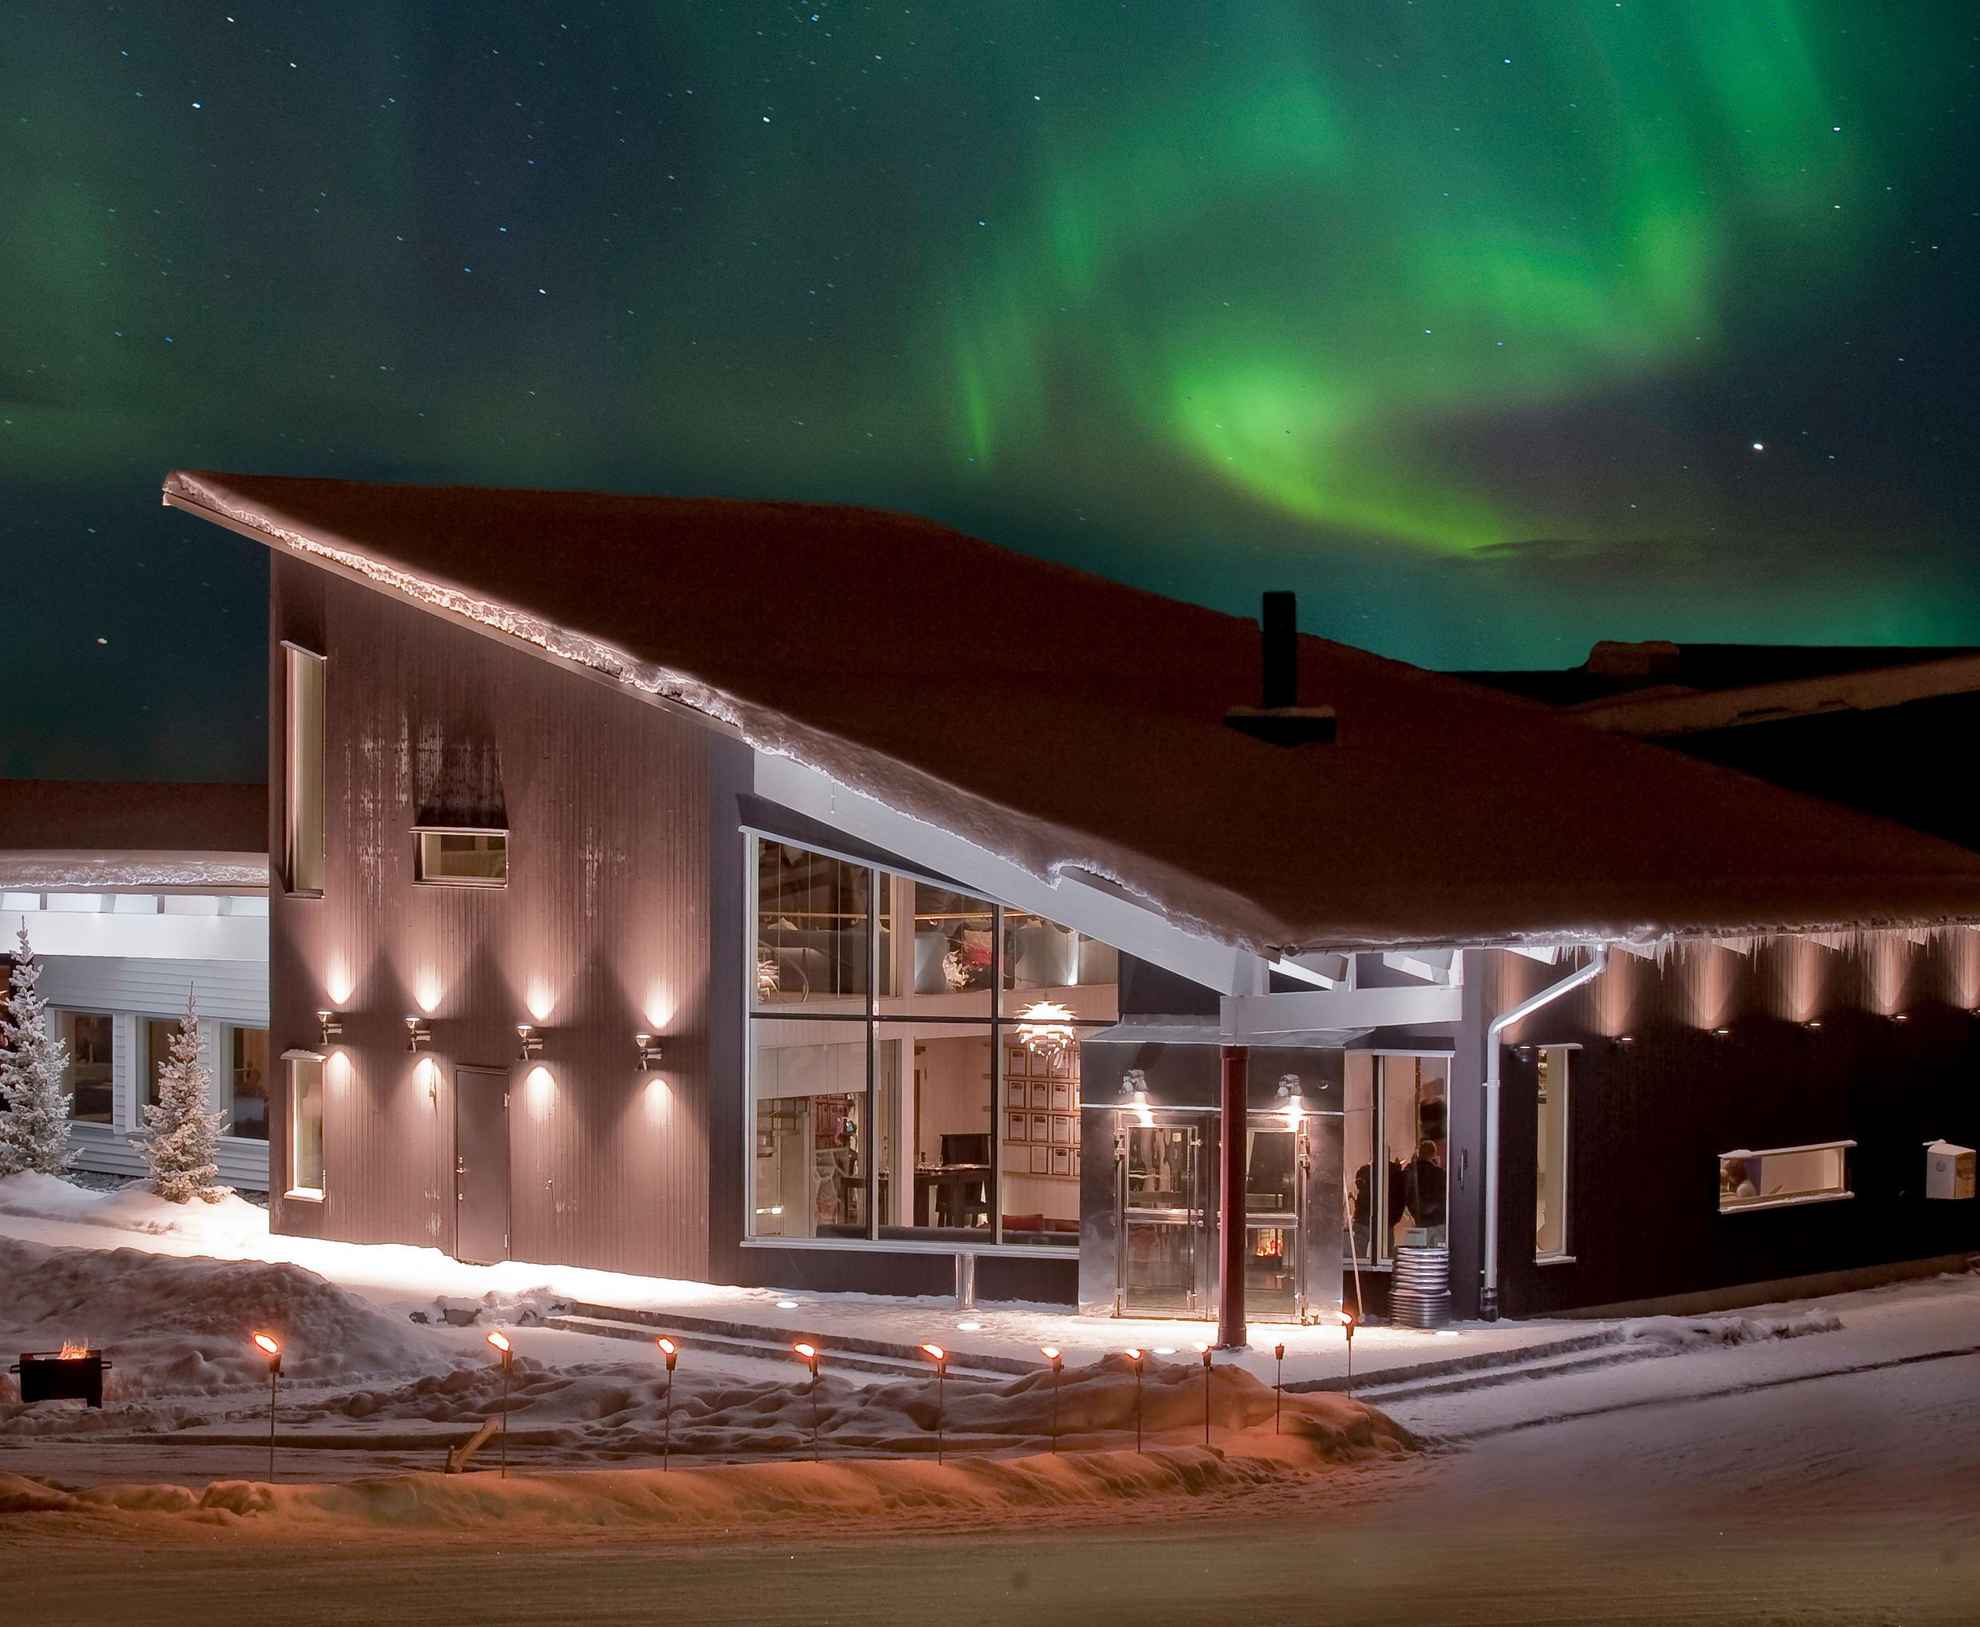 L'aurore boréale se trouve dans le ciel au-dessus d'une maison pendant la nuit en hiver.